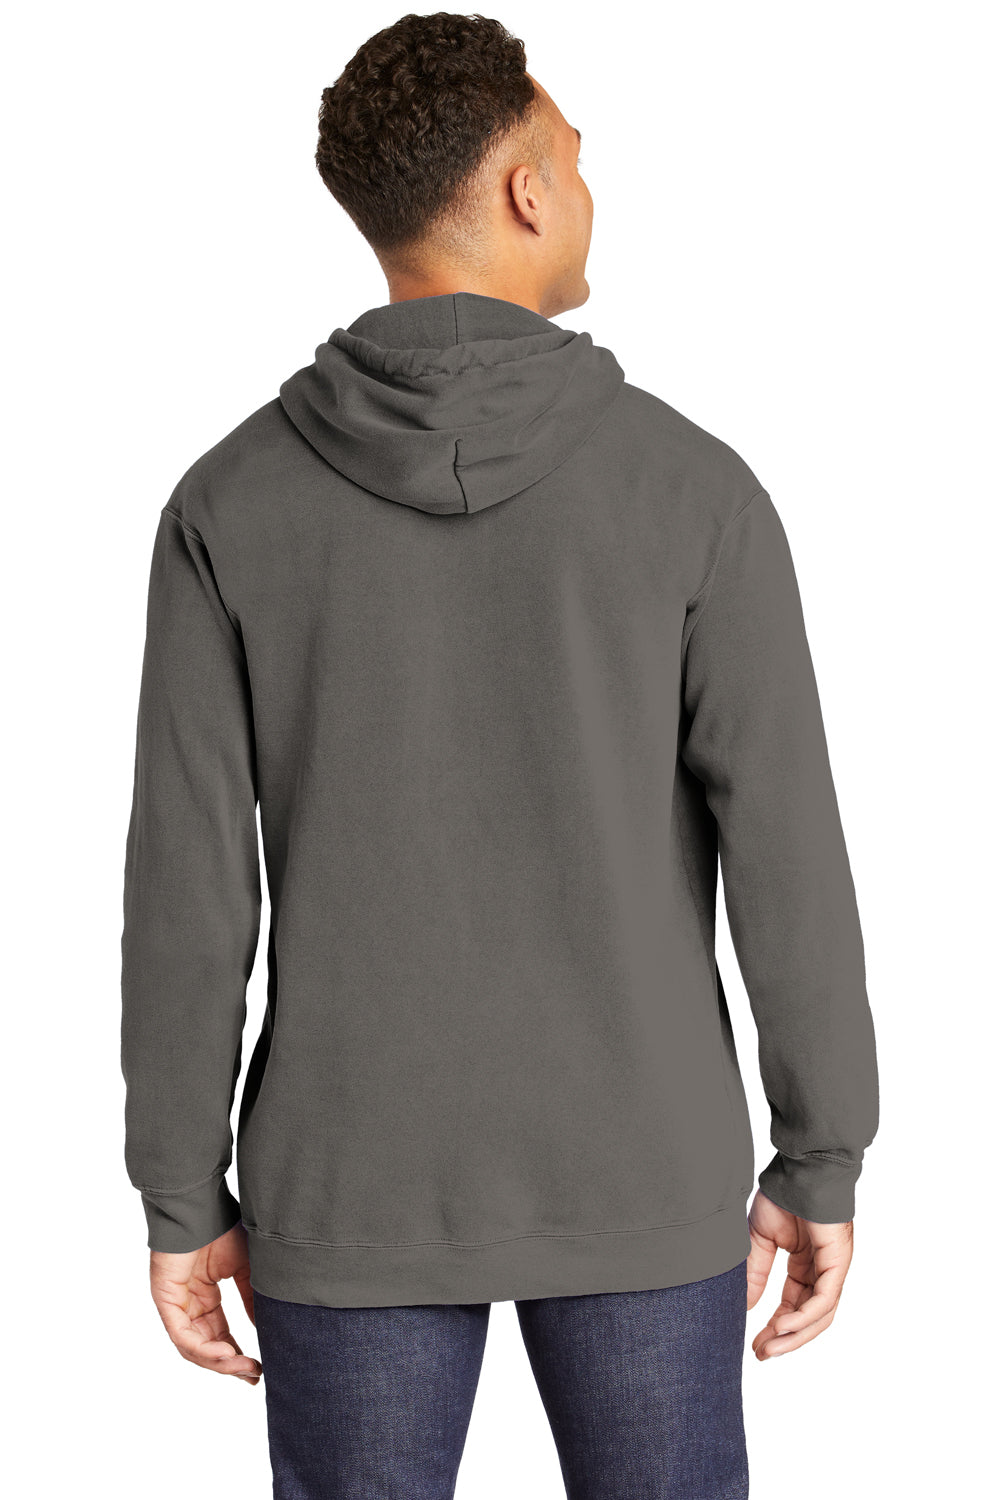 Comfort Colors 1567 Mens Hooded Sweatshirt Hoodie Grey Back